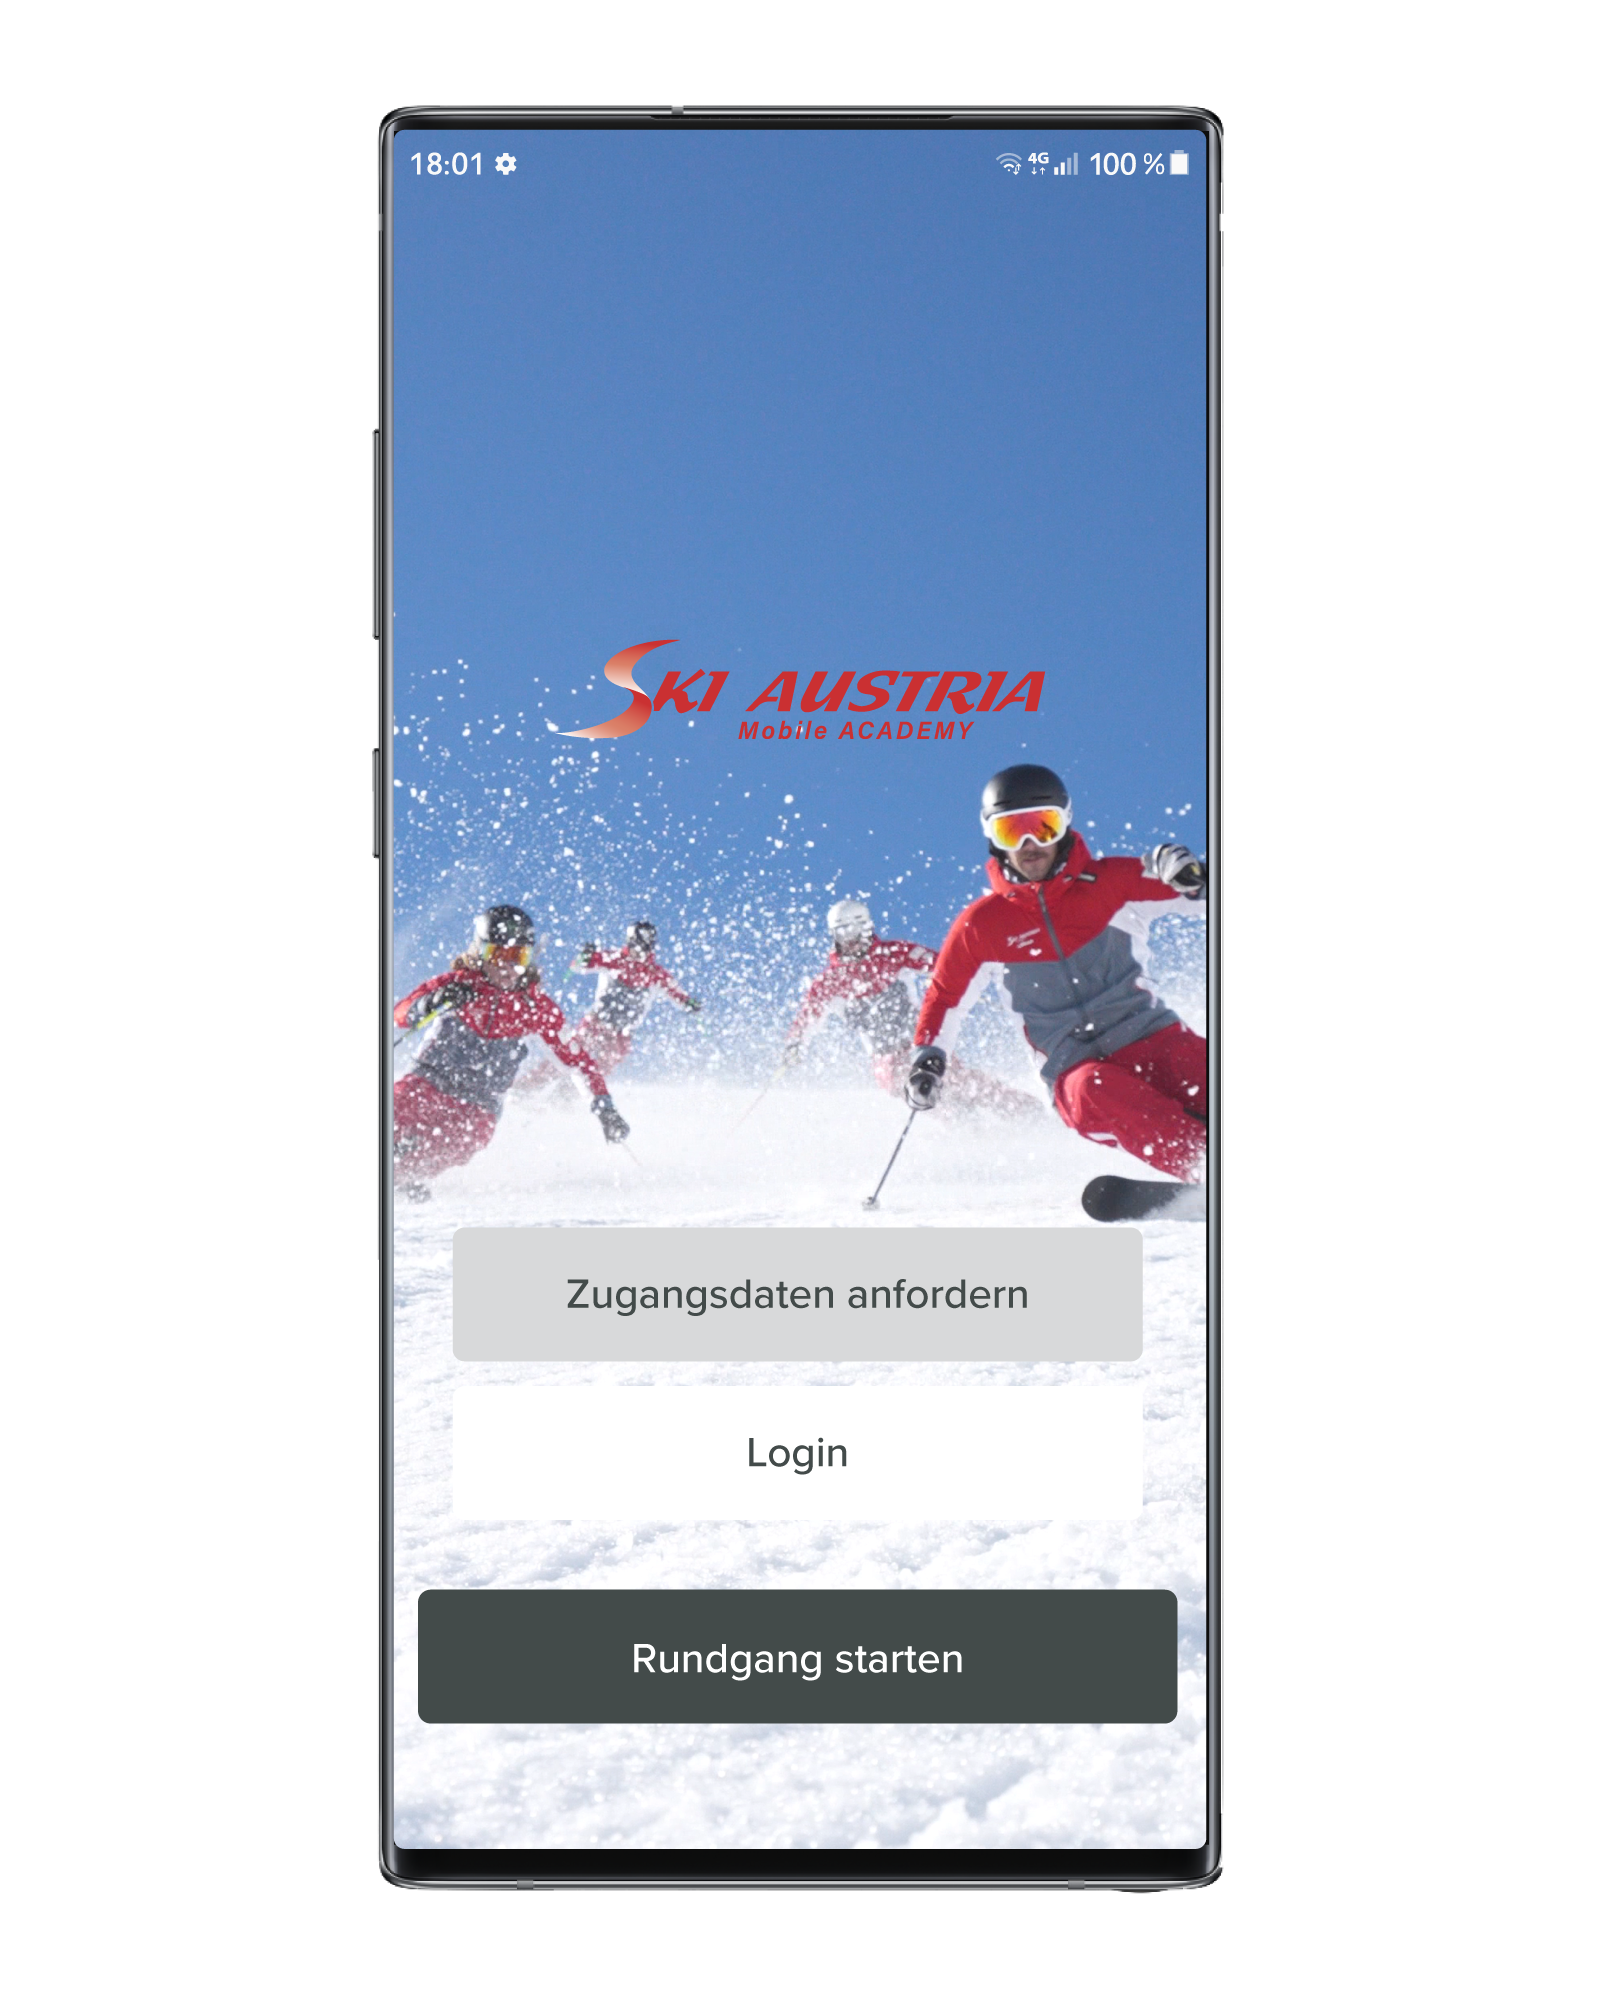 Grafik eines mobilen Devices mit dem Startscreen der LernappSki Austria Mobile Academy - ein digitales Training des österreichischen Skilehrwegs.